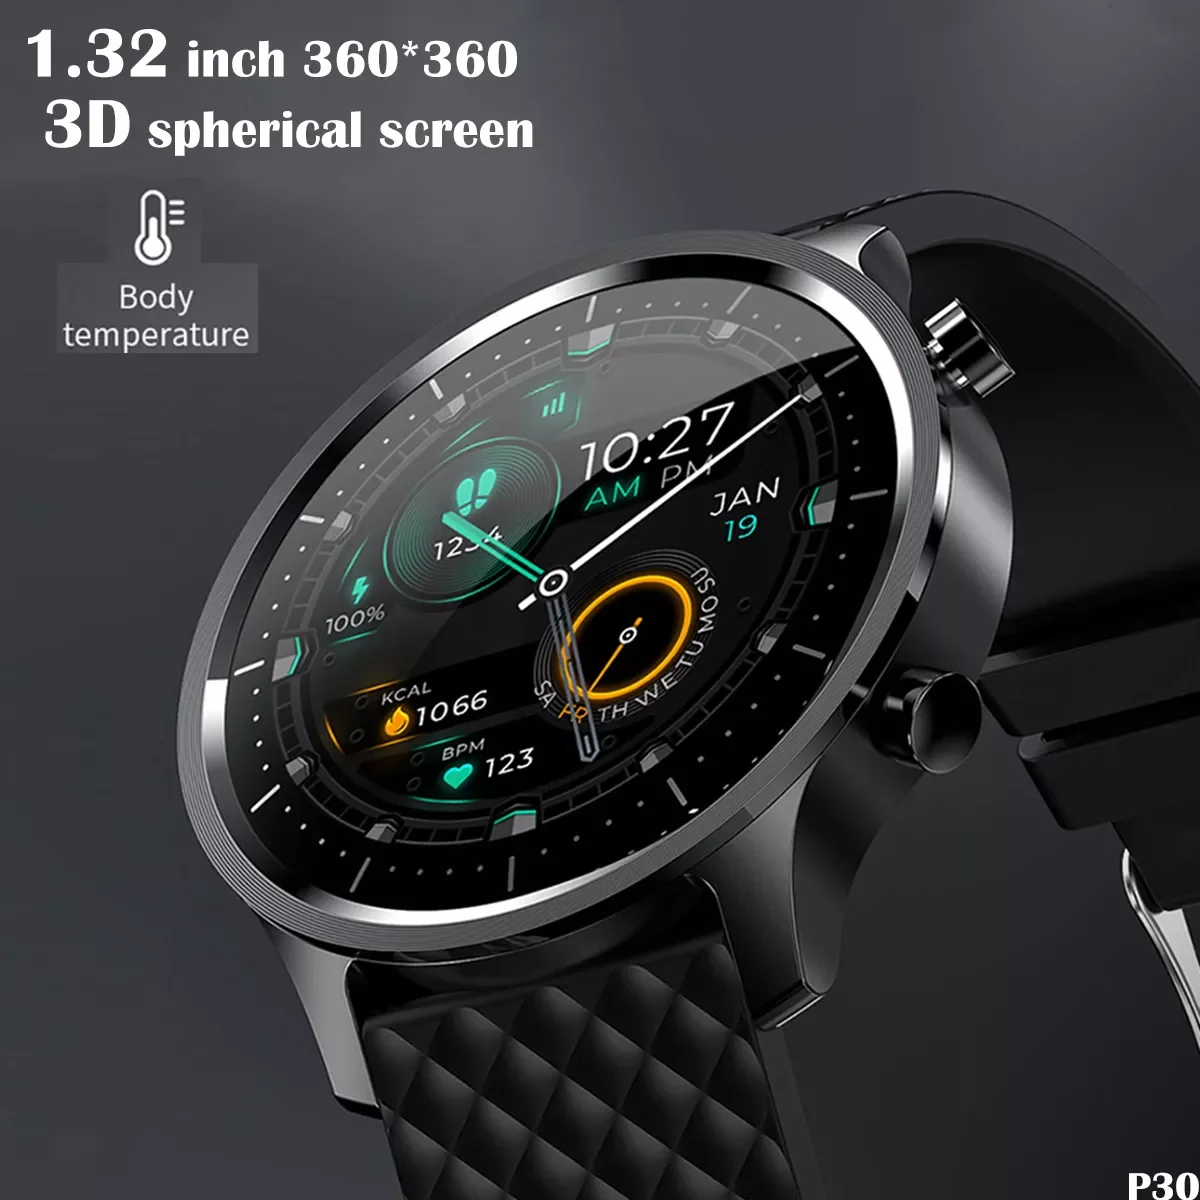 

Новинка 2021, мужские Смарт-часы 2022P30 с 3D сферическим сенсорным экраном, фитнес-часы для мужчин, с датчиком температуры и пульса, Android